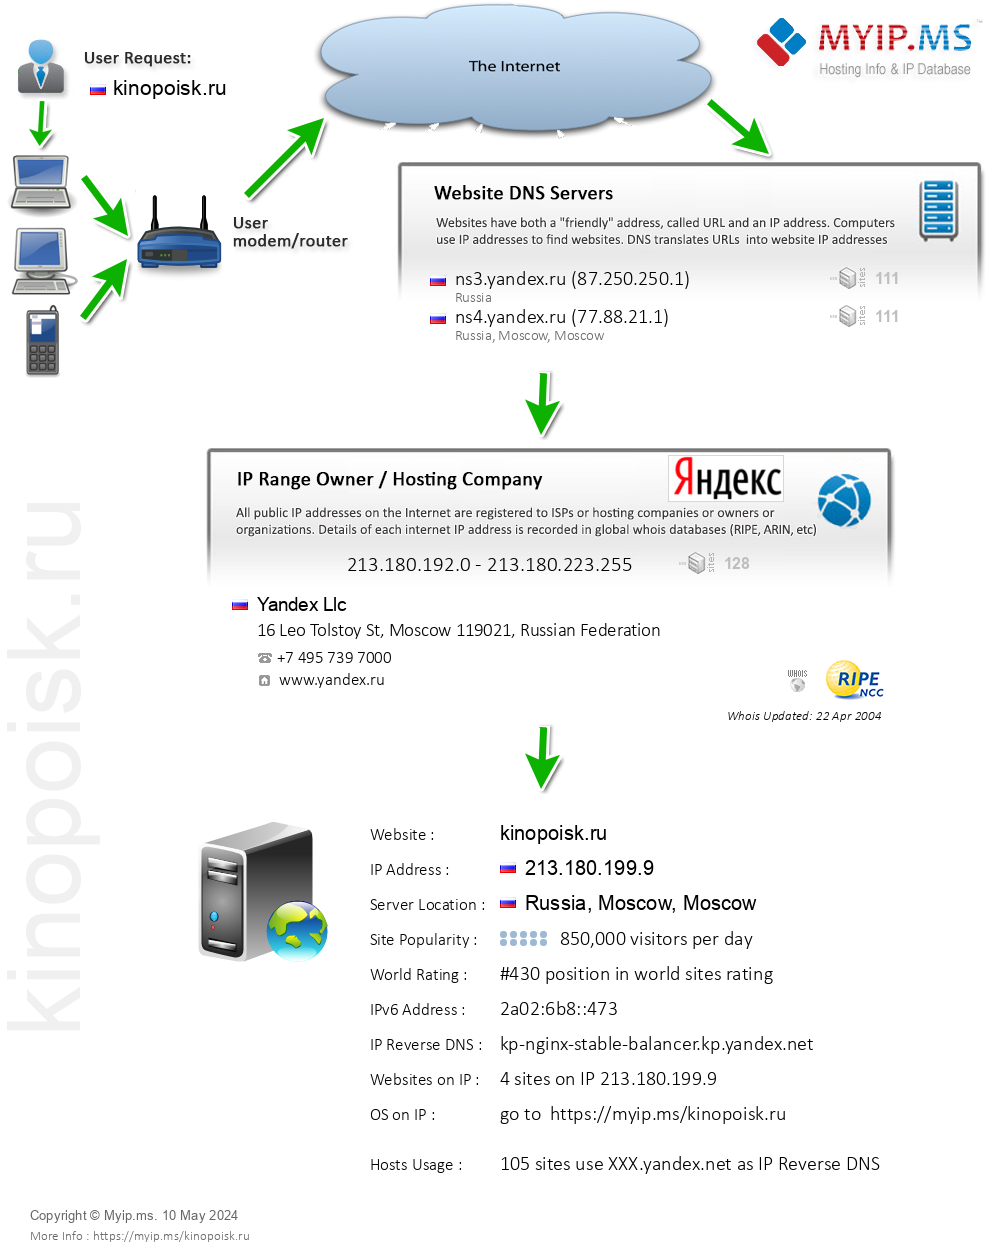 Kinopoisk.ru - Website Hosting Visual IP Diagram